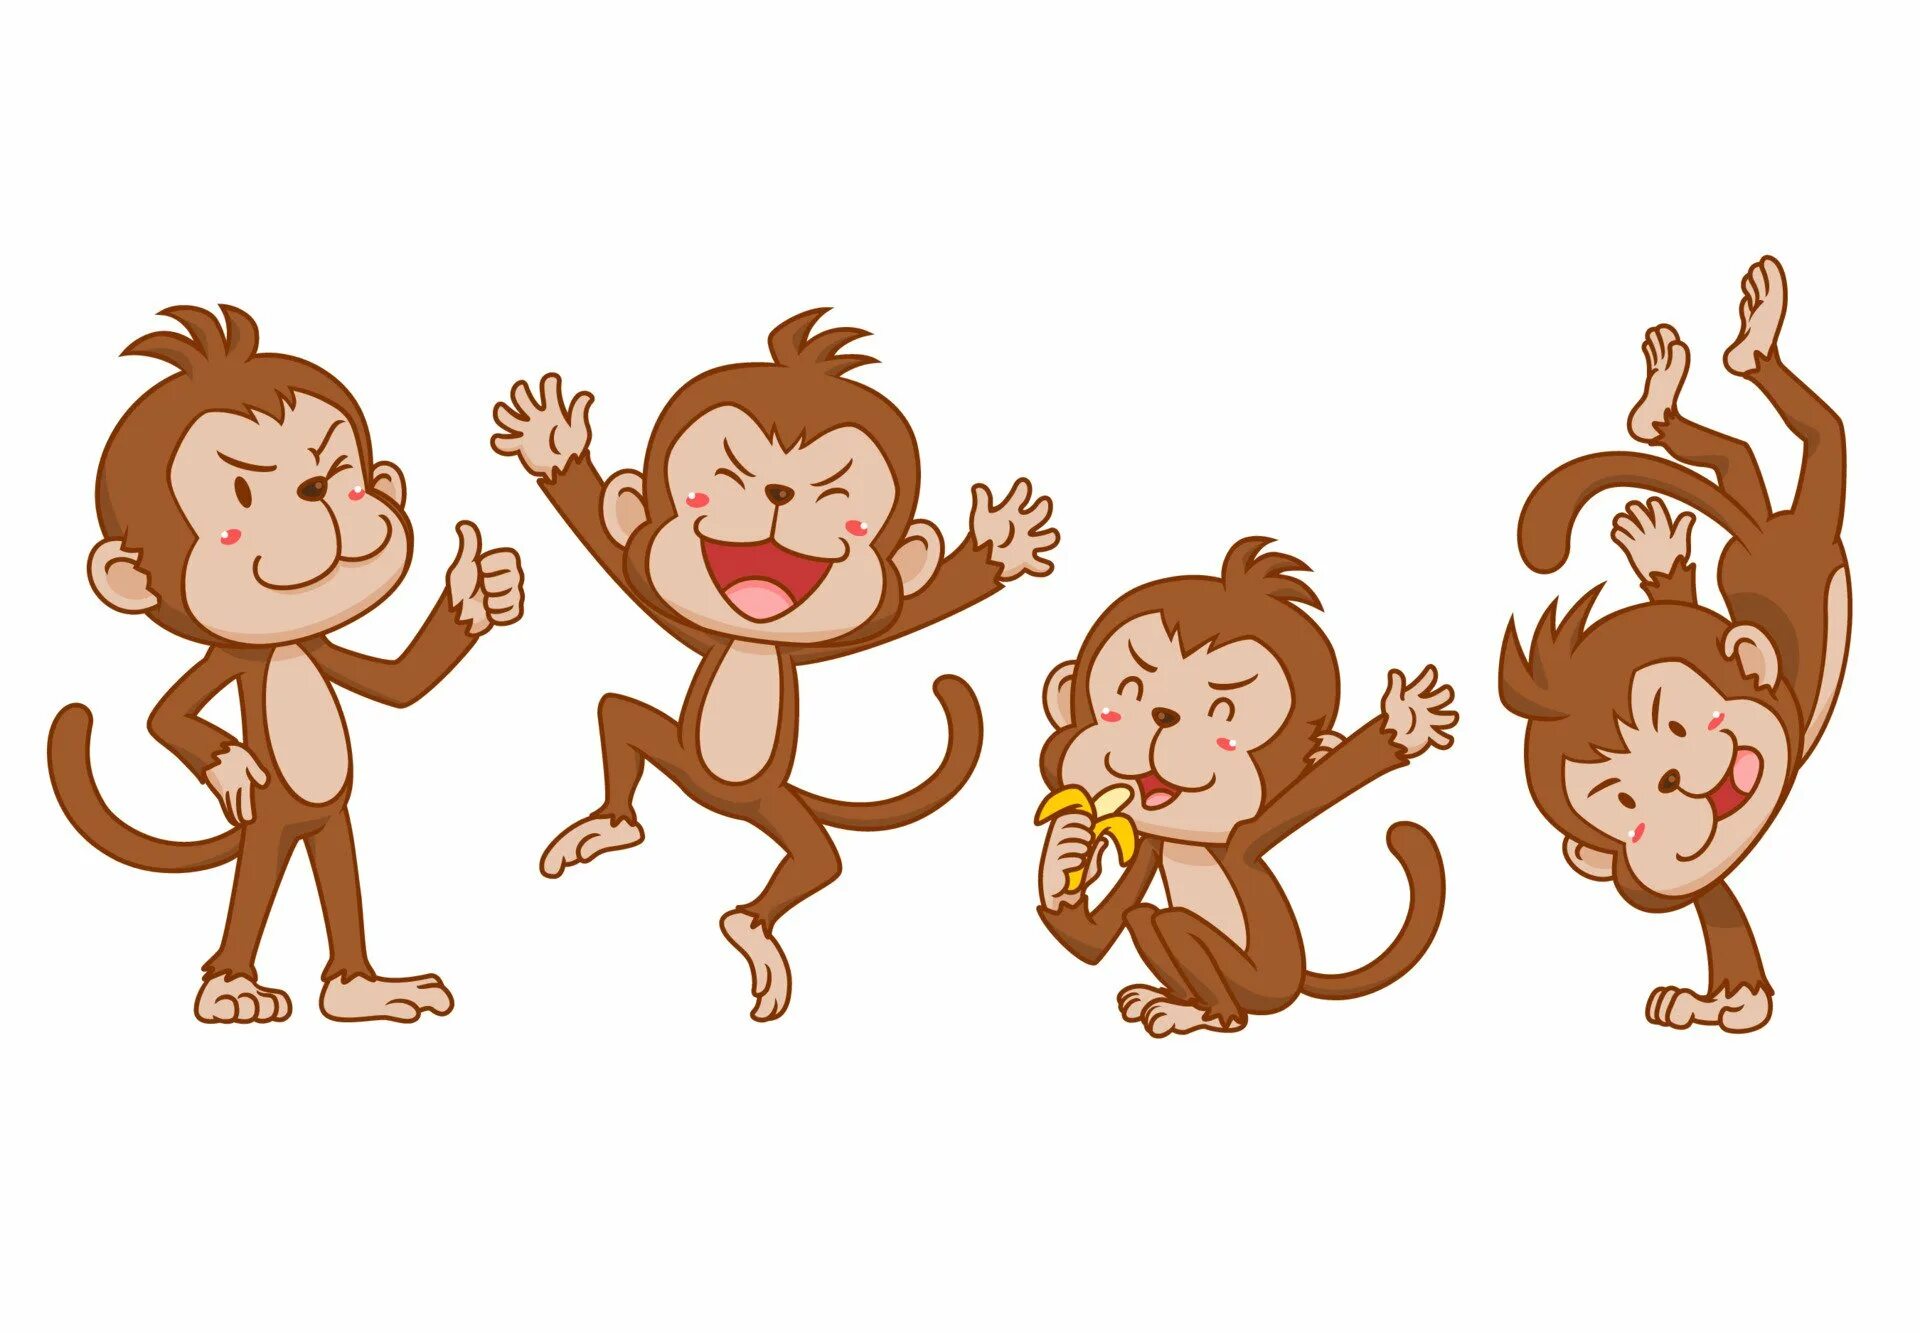 Стиль обезьяны. Обезьяна для детей. Обезьяна рисунок. Обезьянка картинка для детей. Четыре обезьяны.